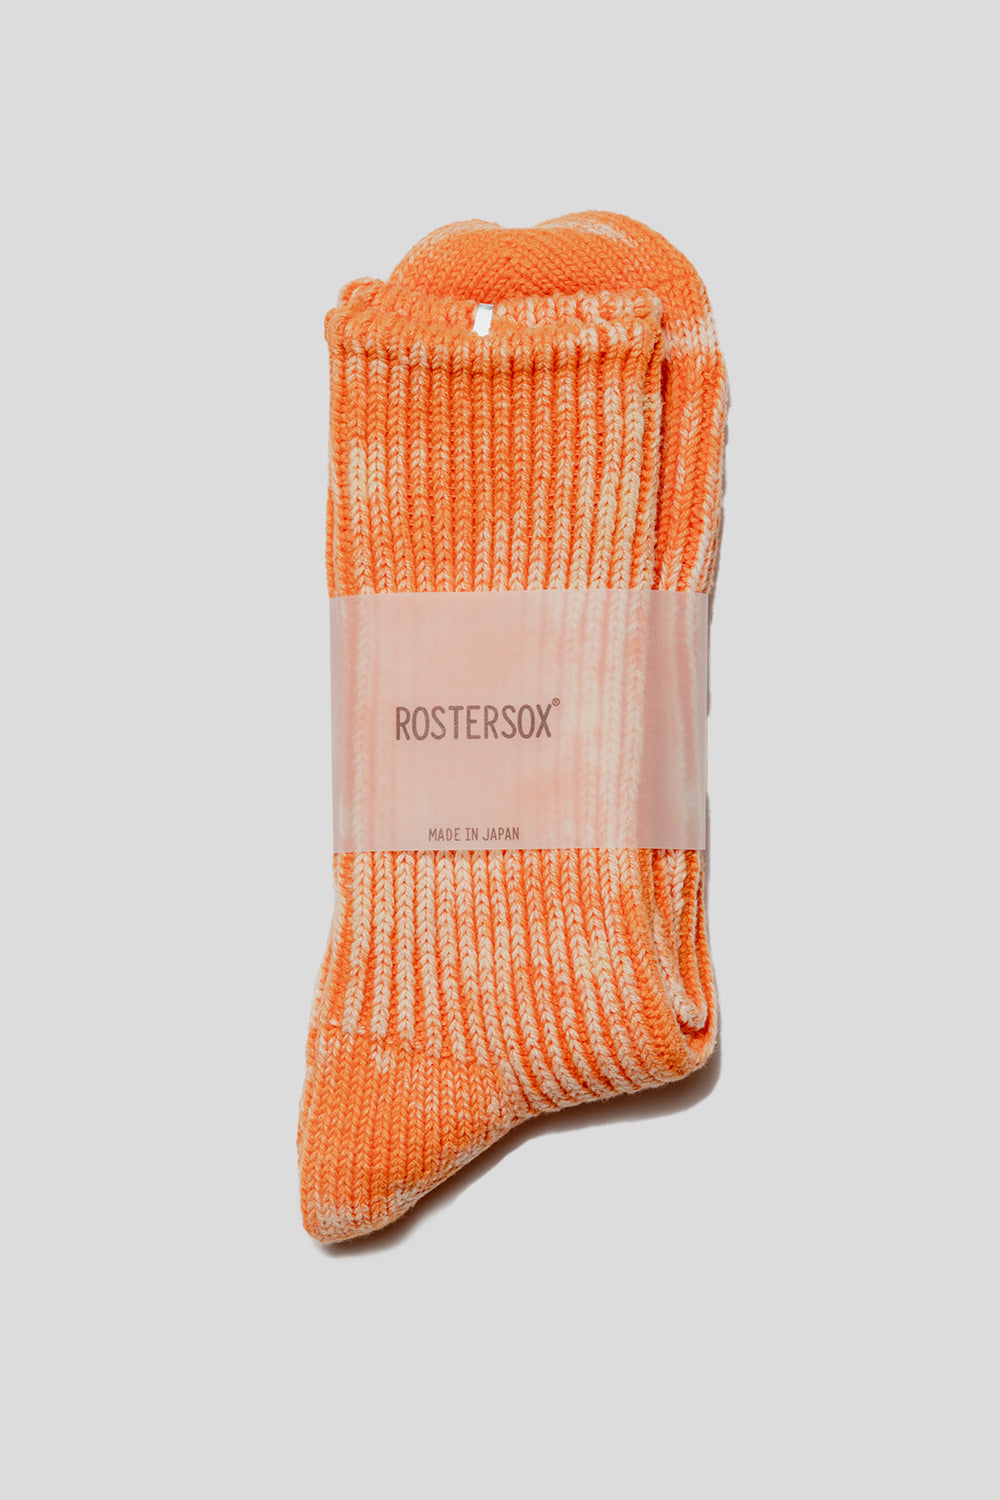 Rostersox BA Socks in Orange